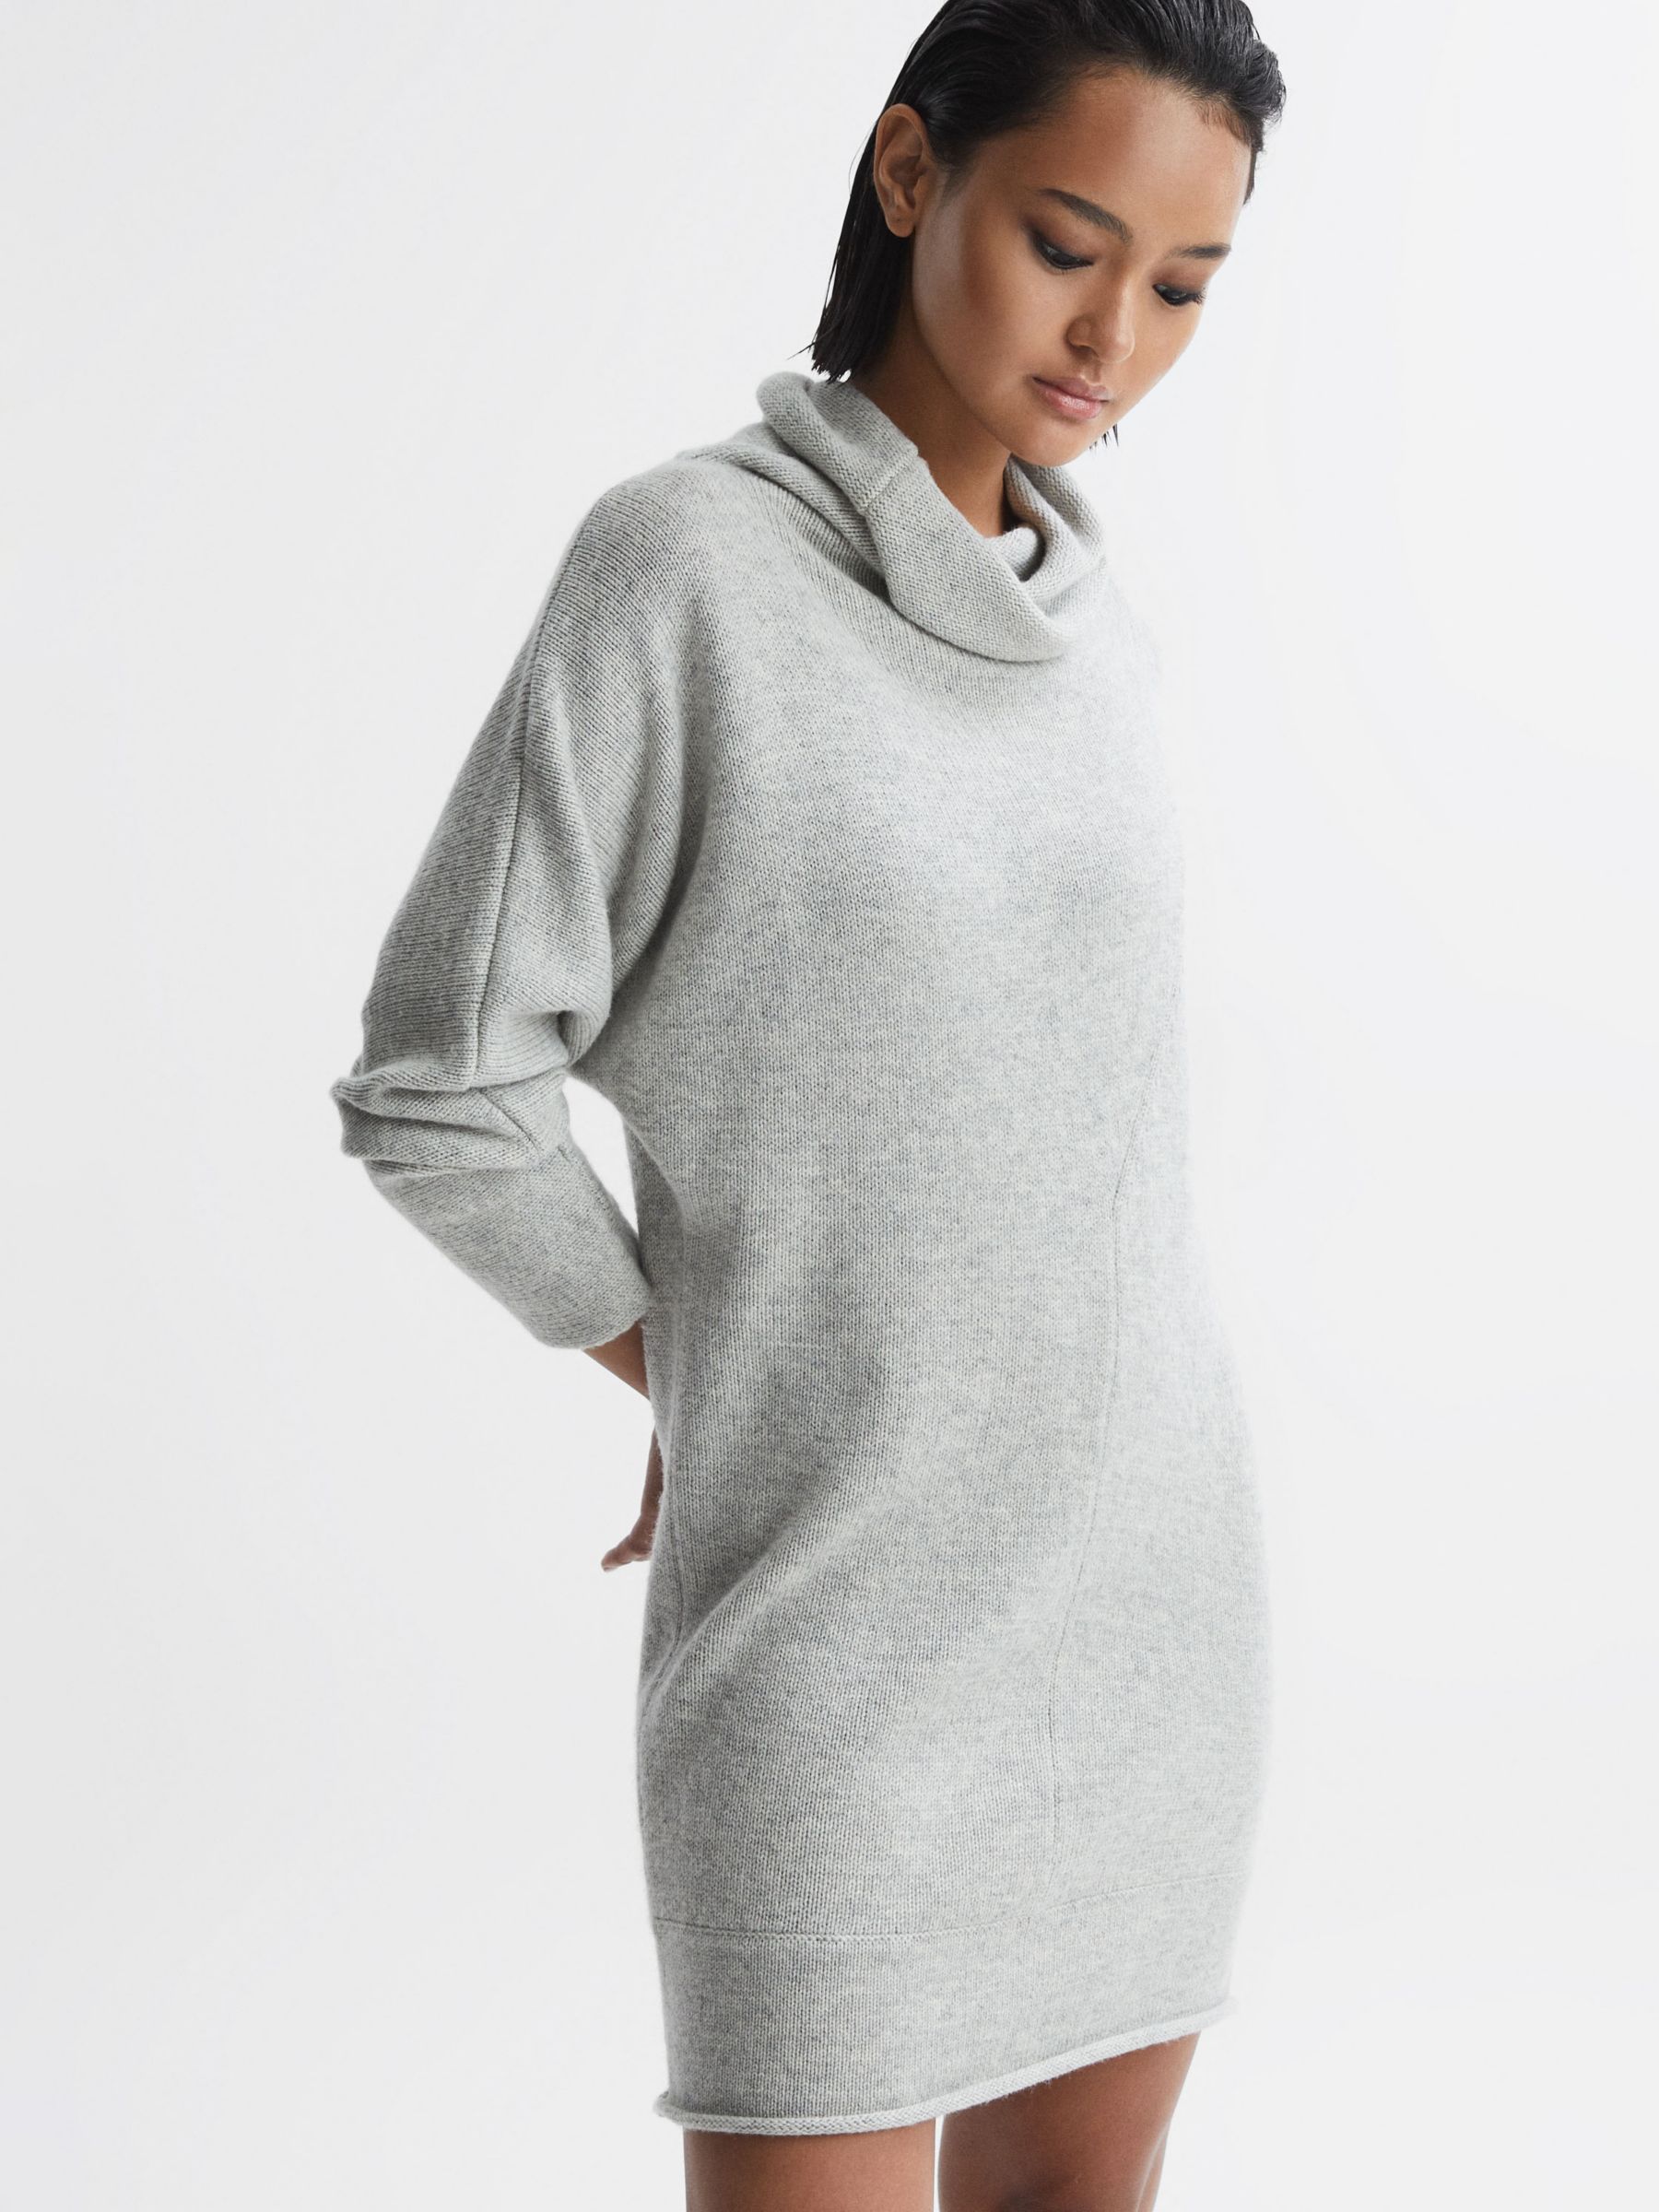 Reiss Sami Wool Blend Mini Jumper Dress, Soft Grey at John Lewis & Partners